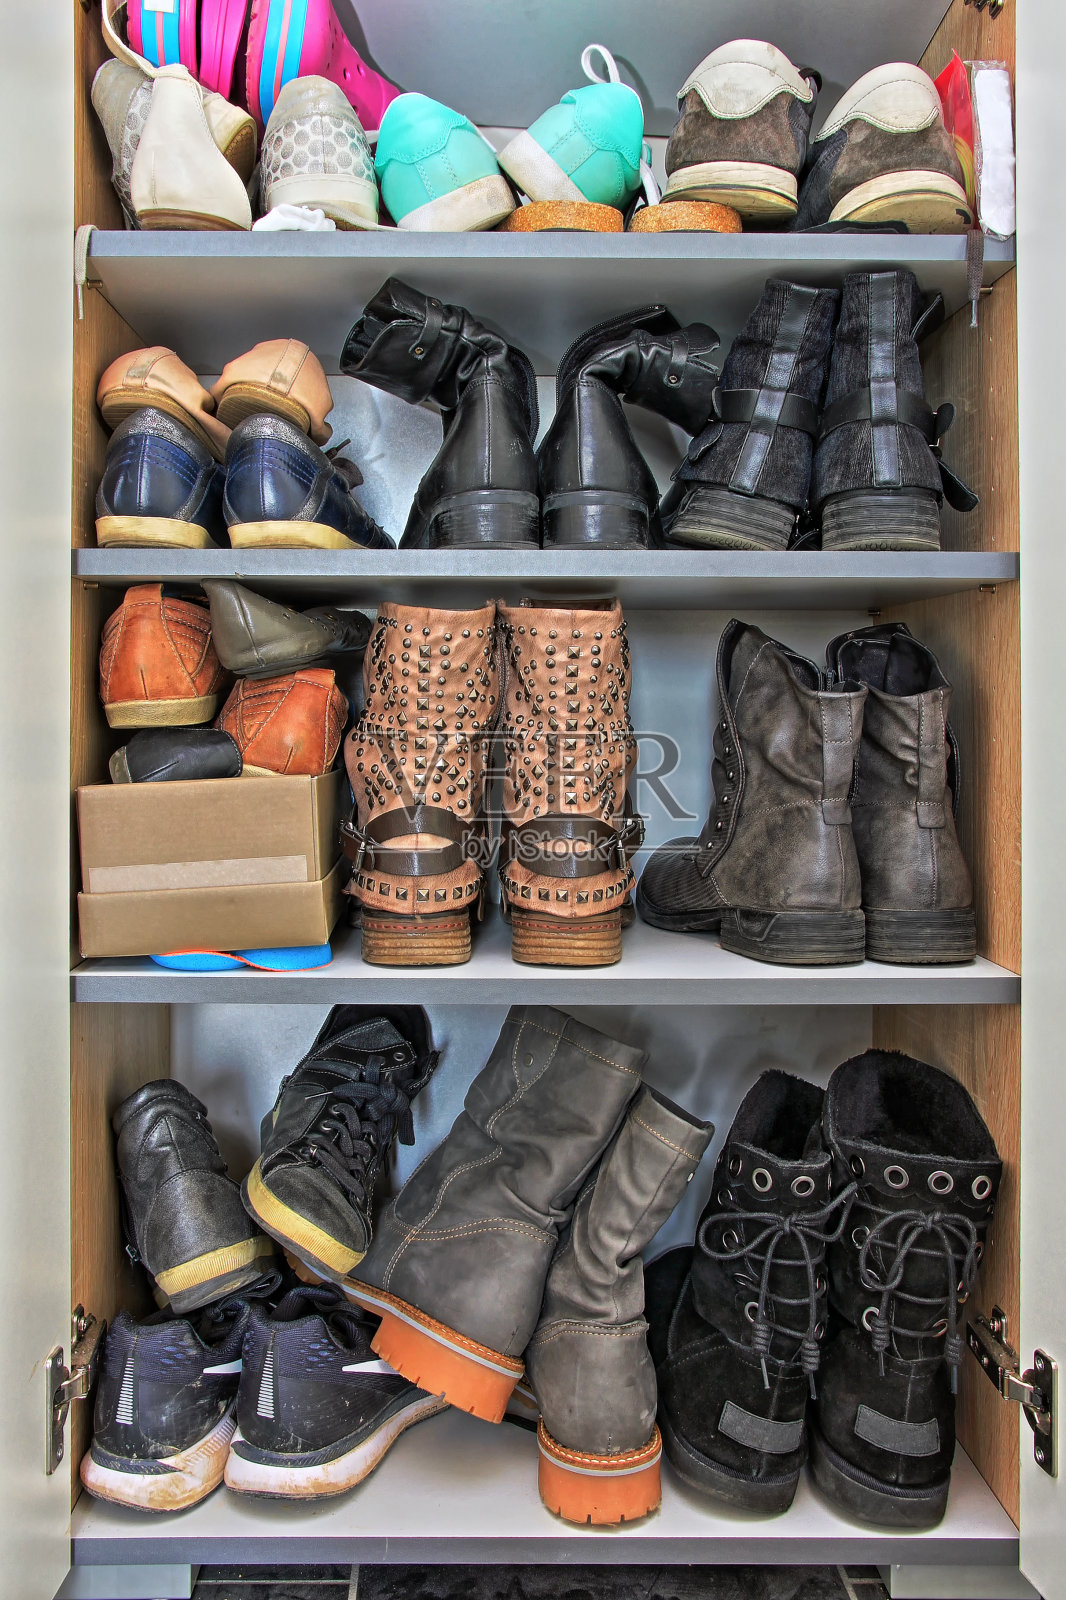 衣柜里有各式各样的男女鞋子照片摄影图片